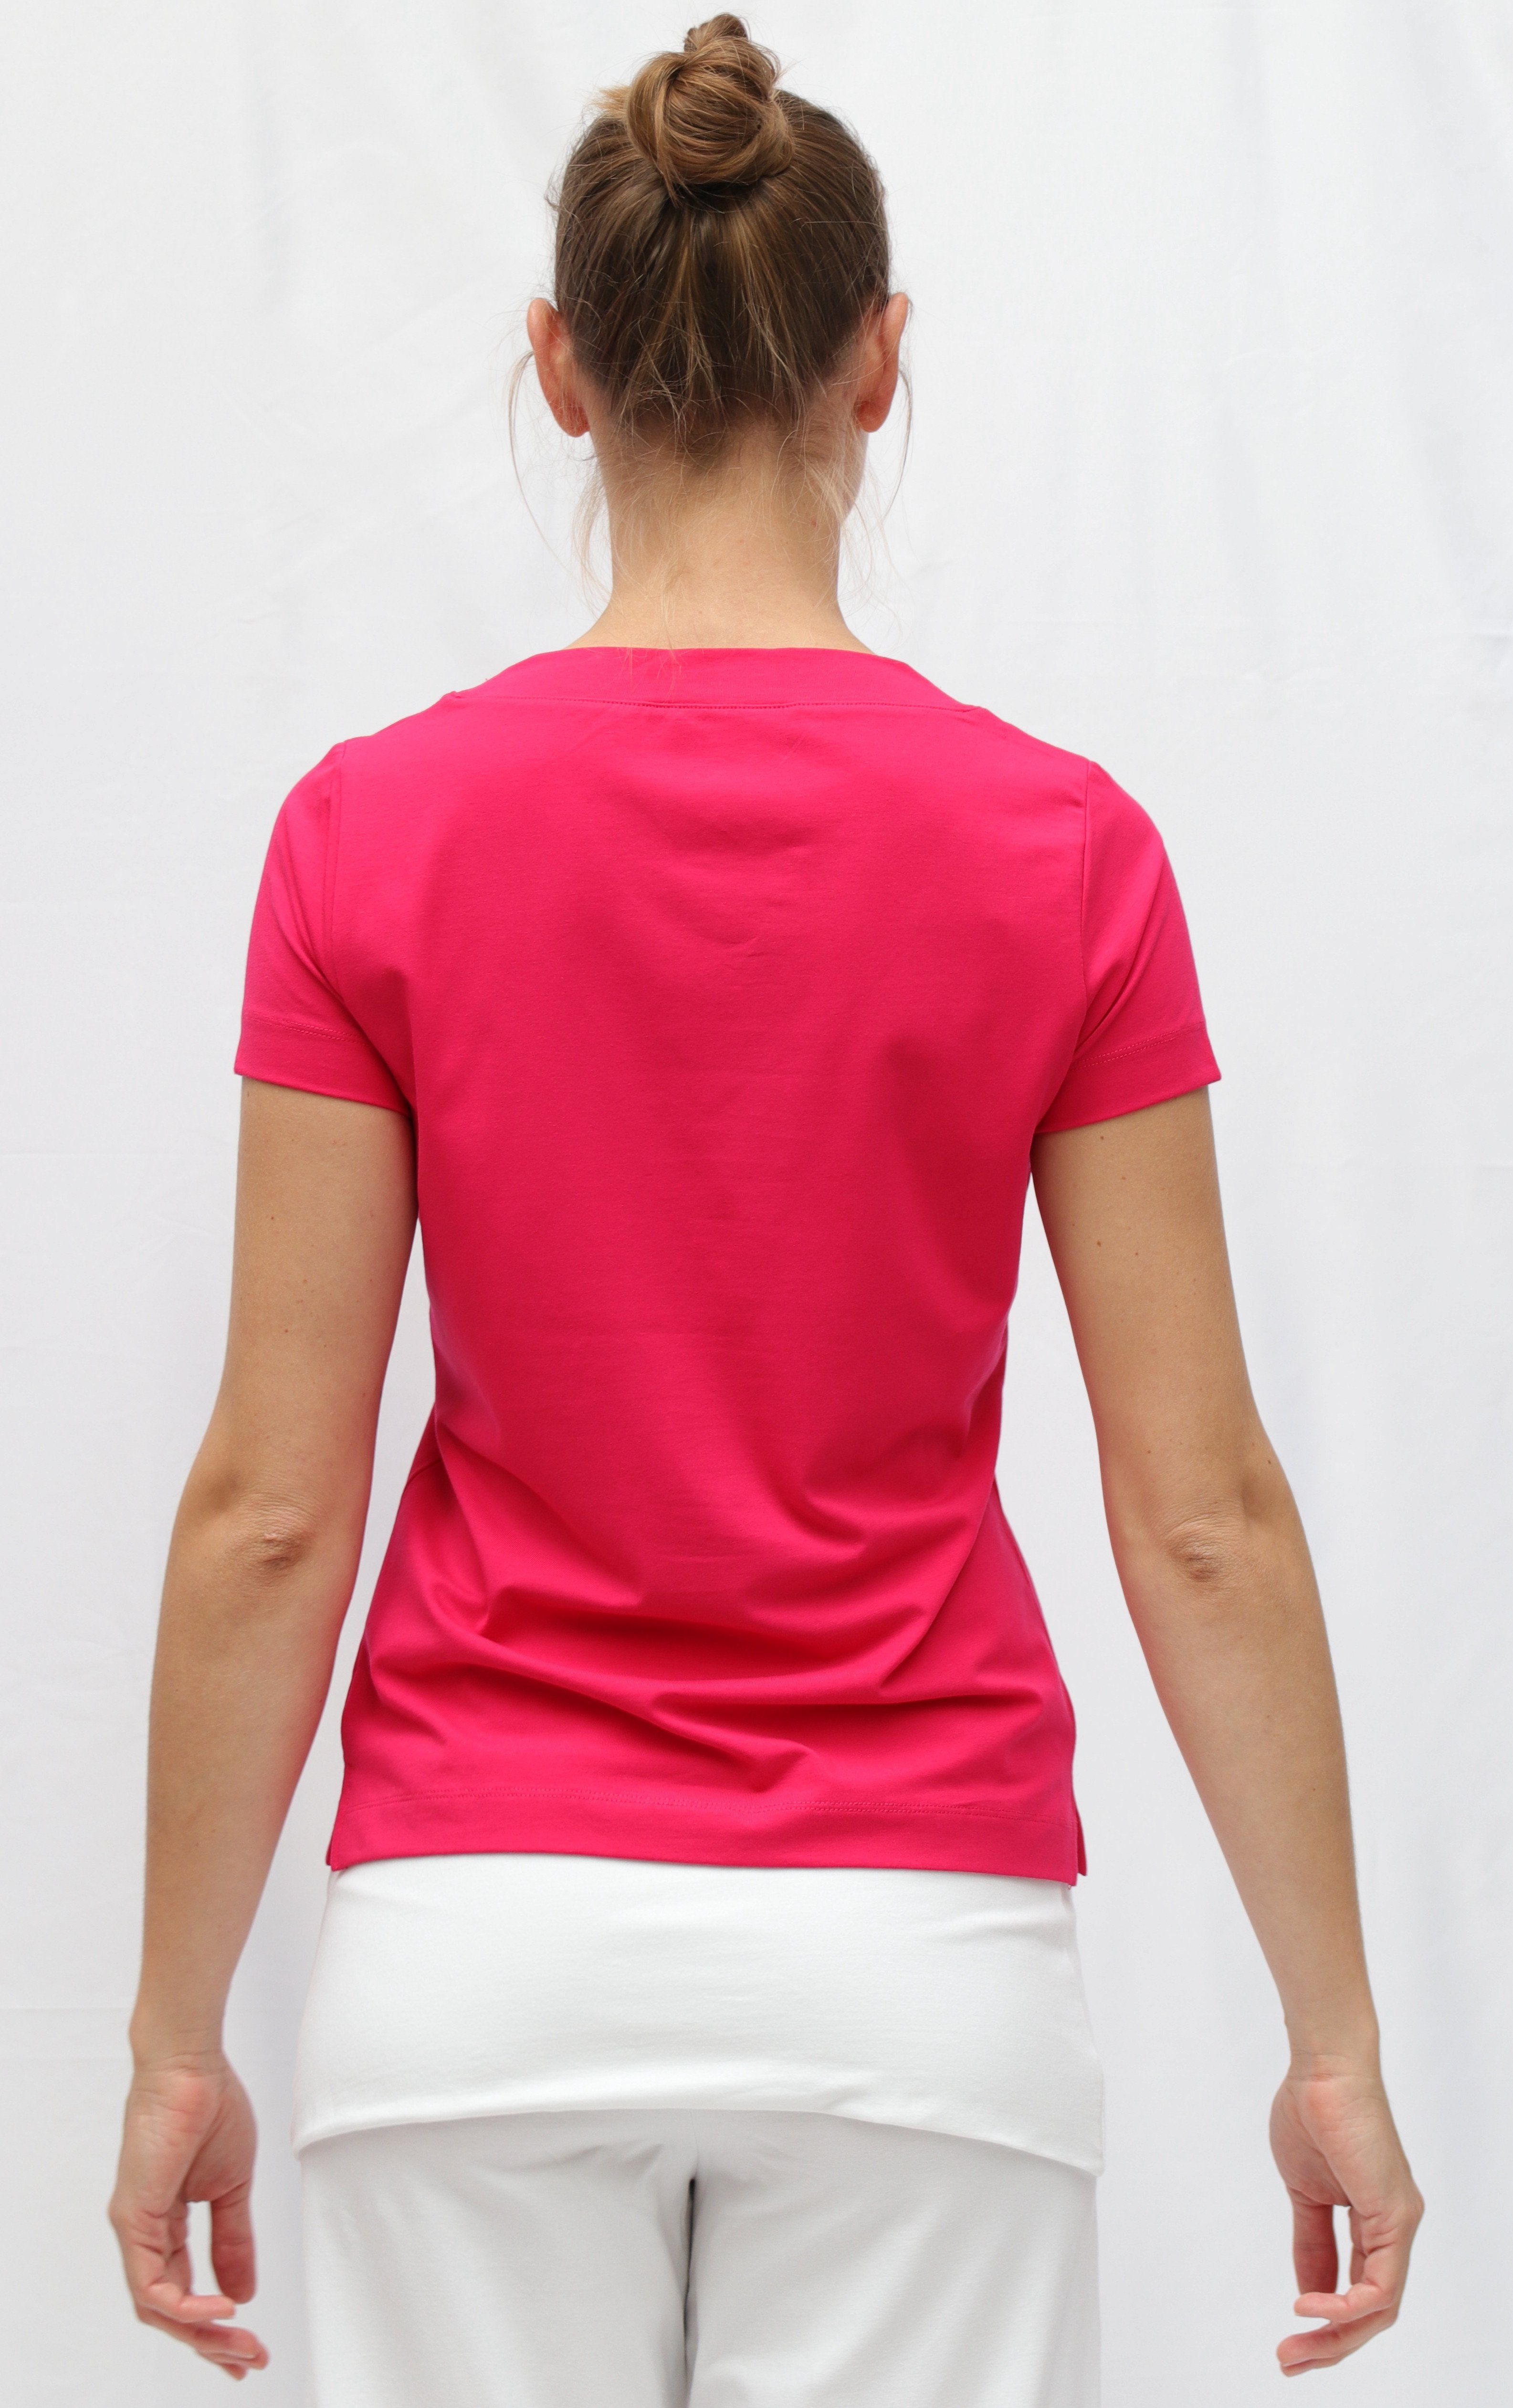 ESPARTO Farishta in unten geschlitzt V-Shirt kurzen Yogashirt Bio-Baumwolle mit Ärmeln, V-Shirt Raspberry Yoga